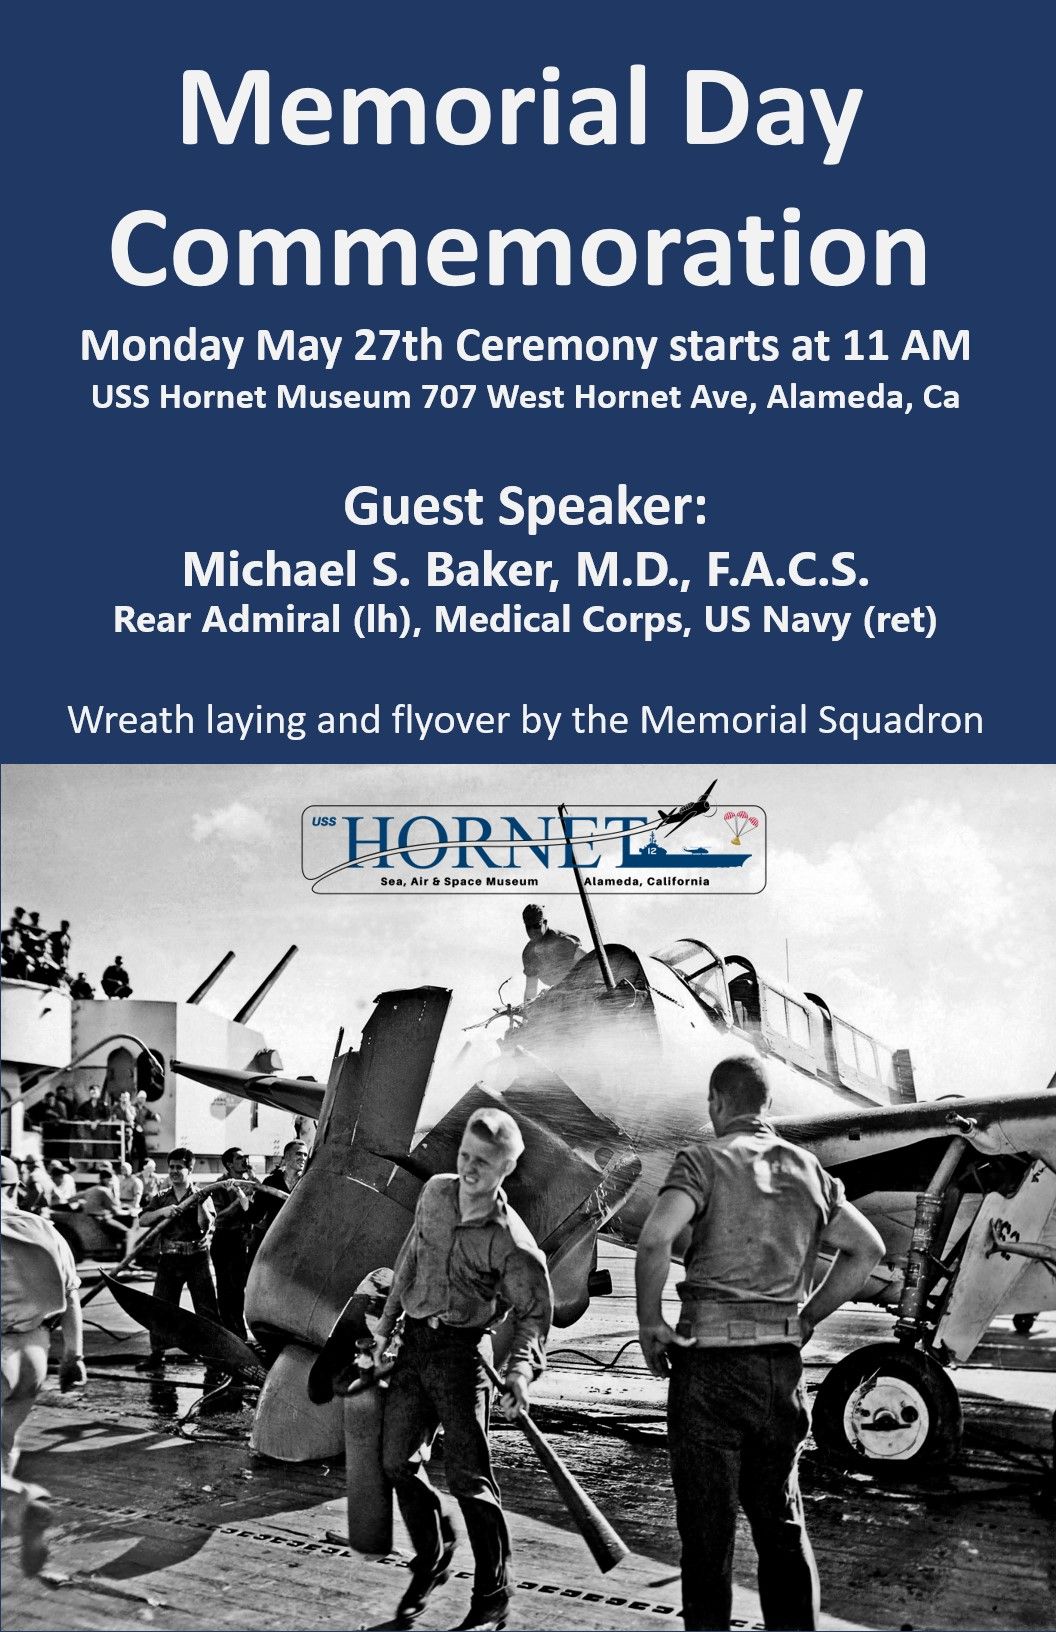 Memorial Day @ the USS Hornet